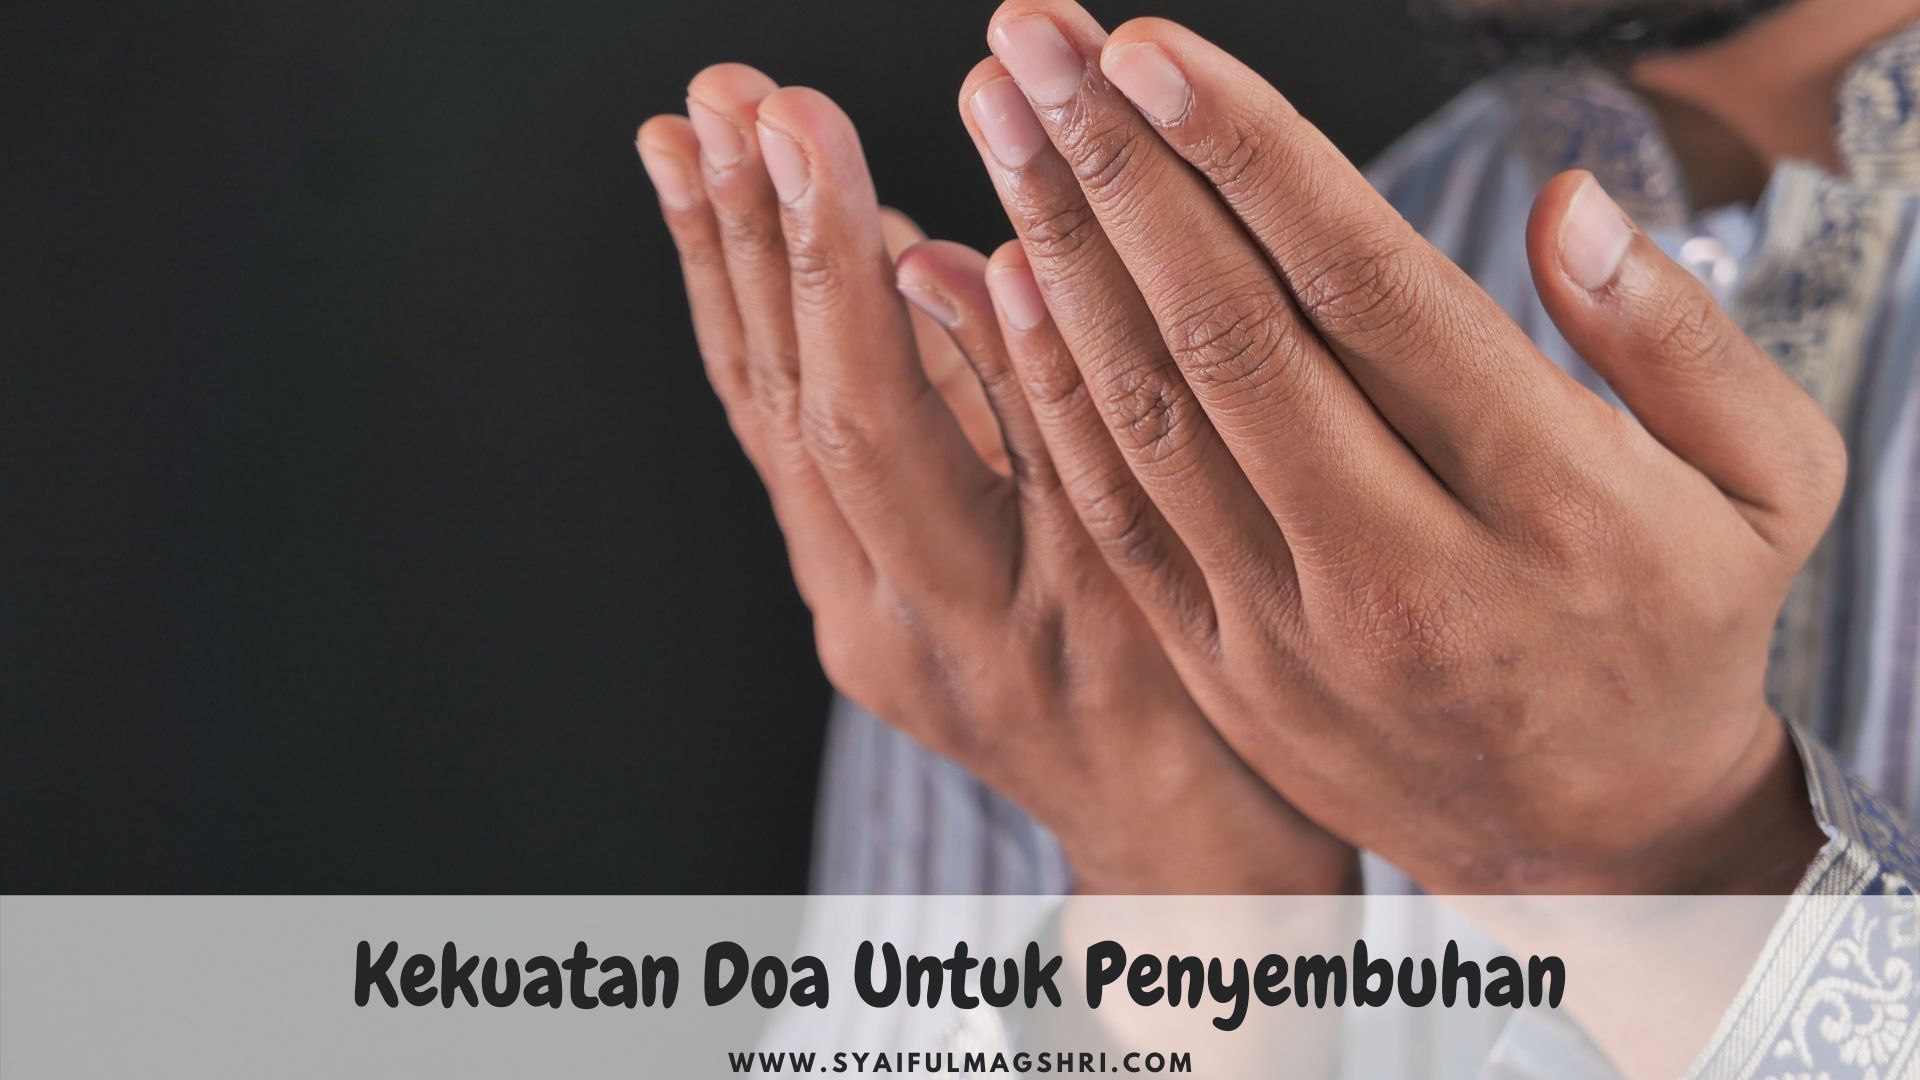 Kekuatan Doa untuk Penyembuhan - Syaiful Maghsri.com